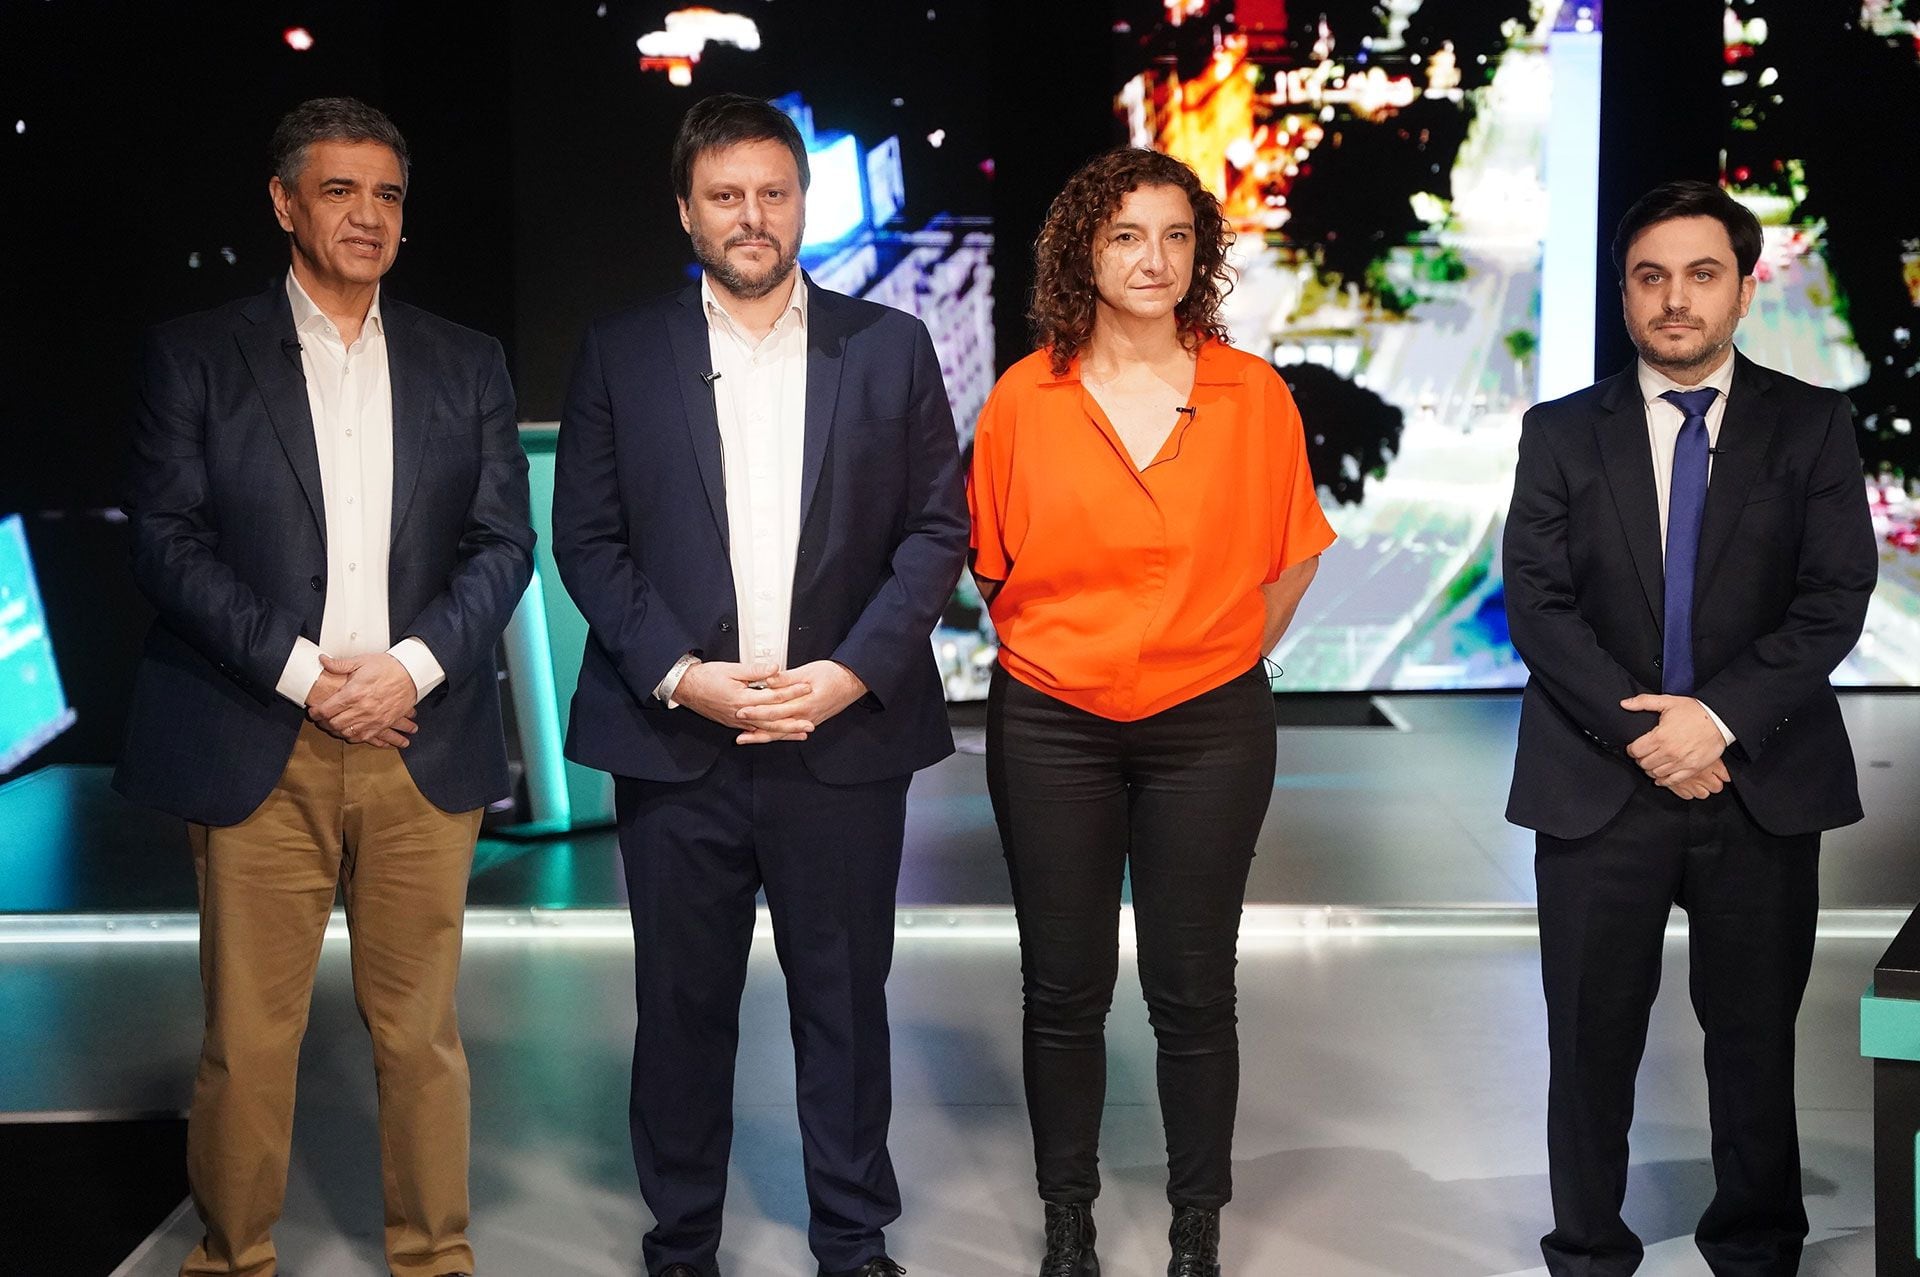 Jorge Macri, Leandro Santoro, Ramiro Marra y Vanina Biasi, los candidatos a jefe de gobierno de la Ciudad (Franco Fafasuli)